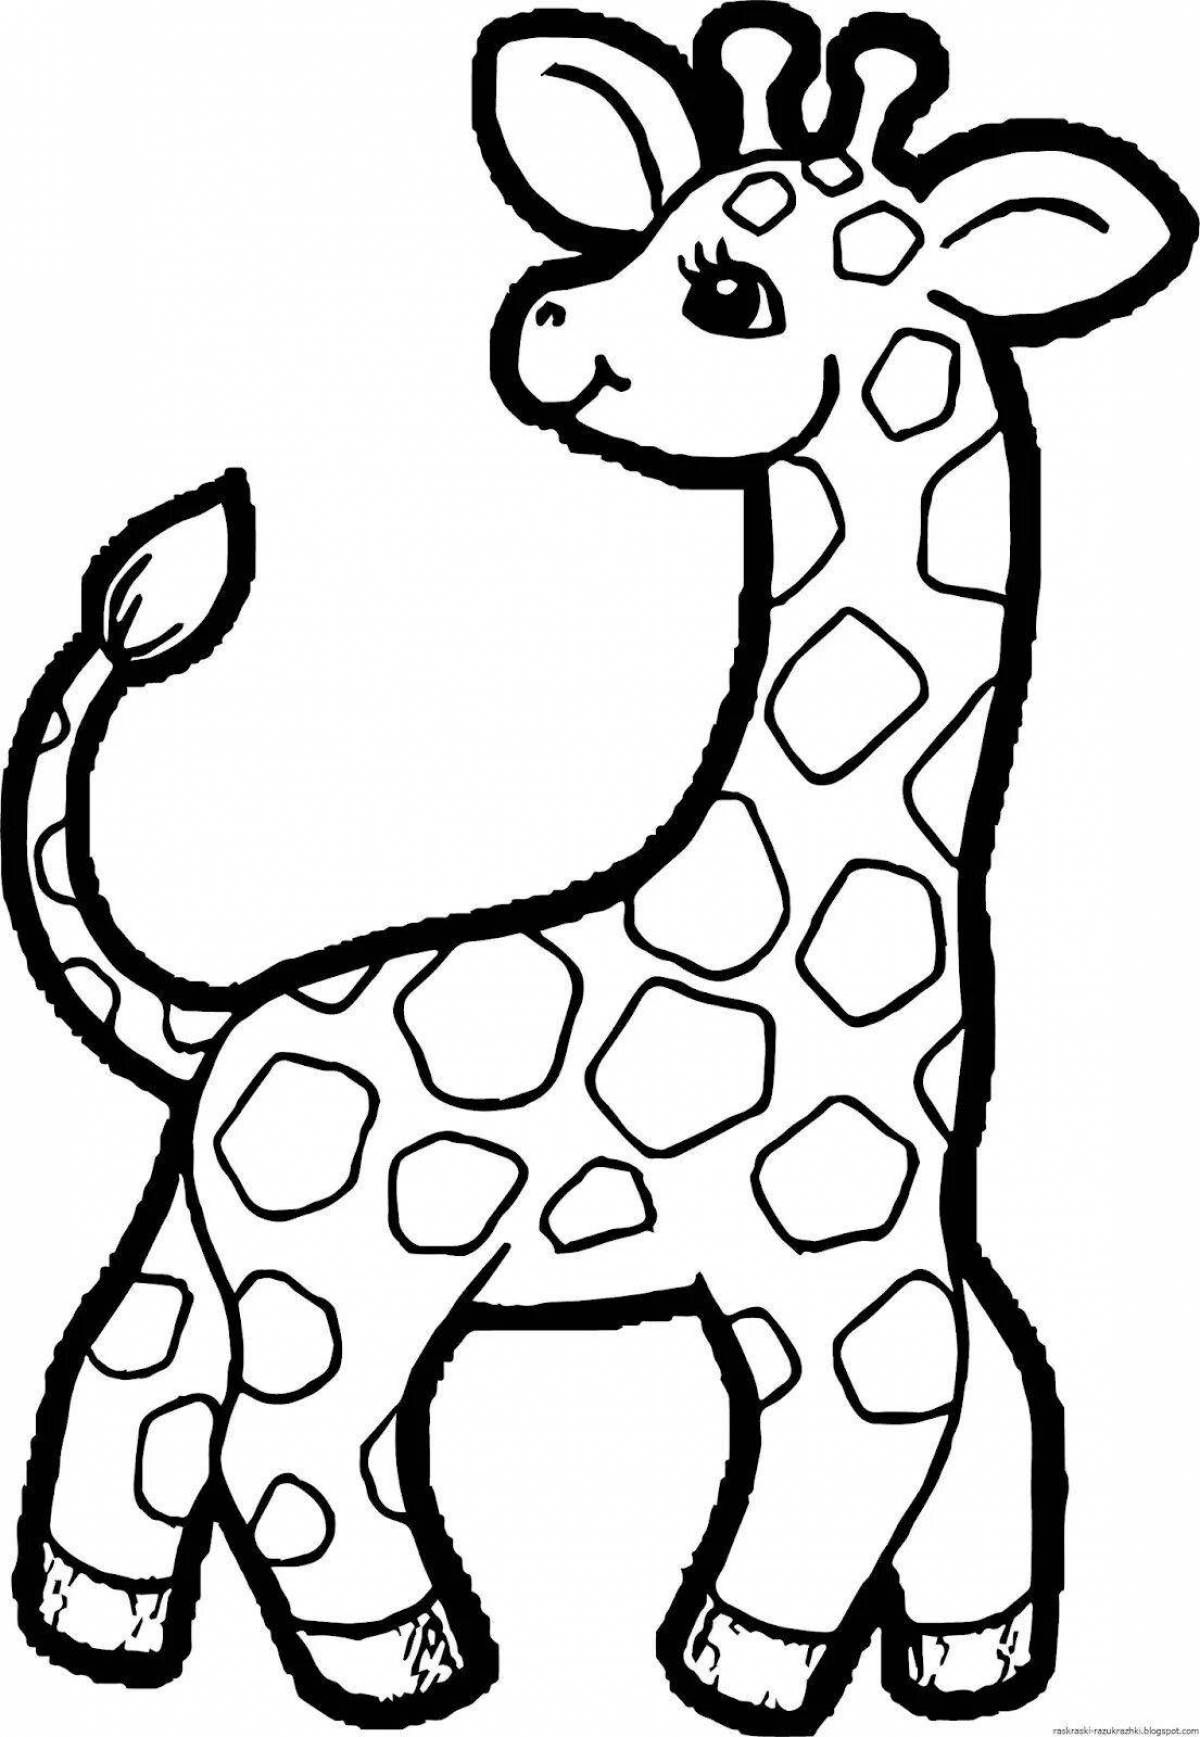 Креативное рисование животных для детей